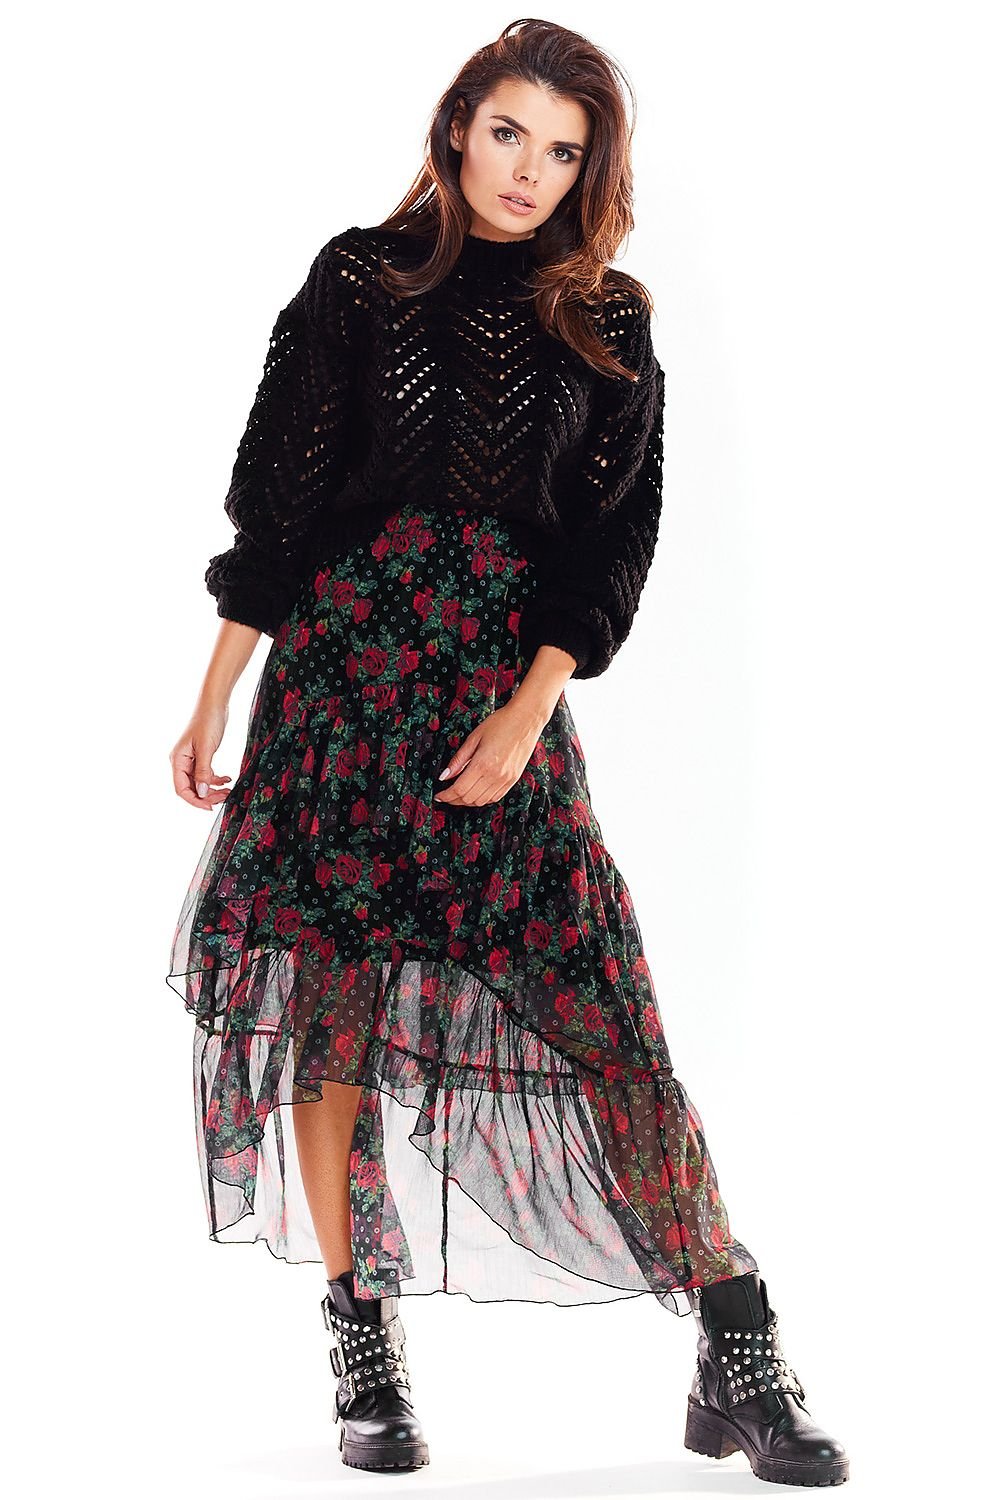 Jupe longue bohème à motif floral avec transparence pour un style féminin et tendance, parfait pour une tenue décontractée chic.